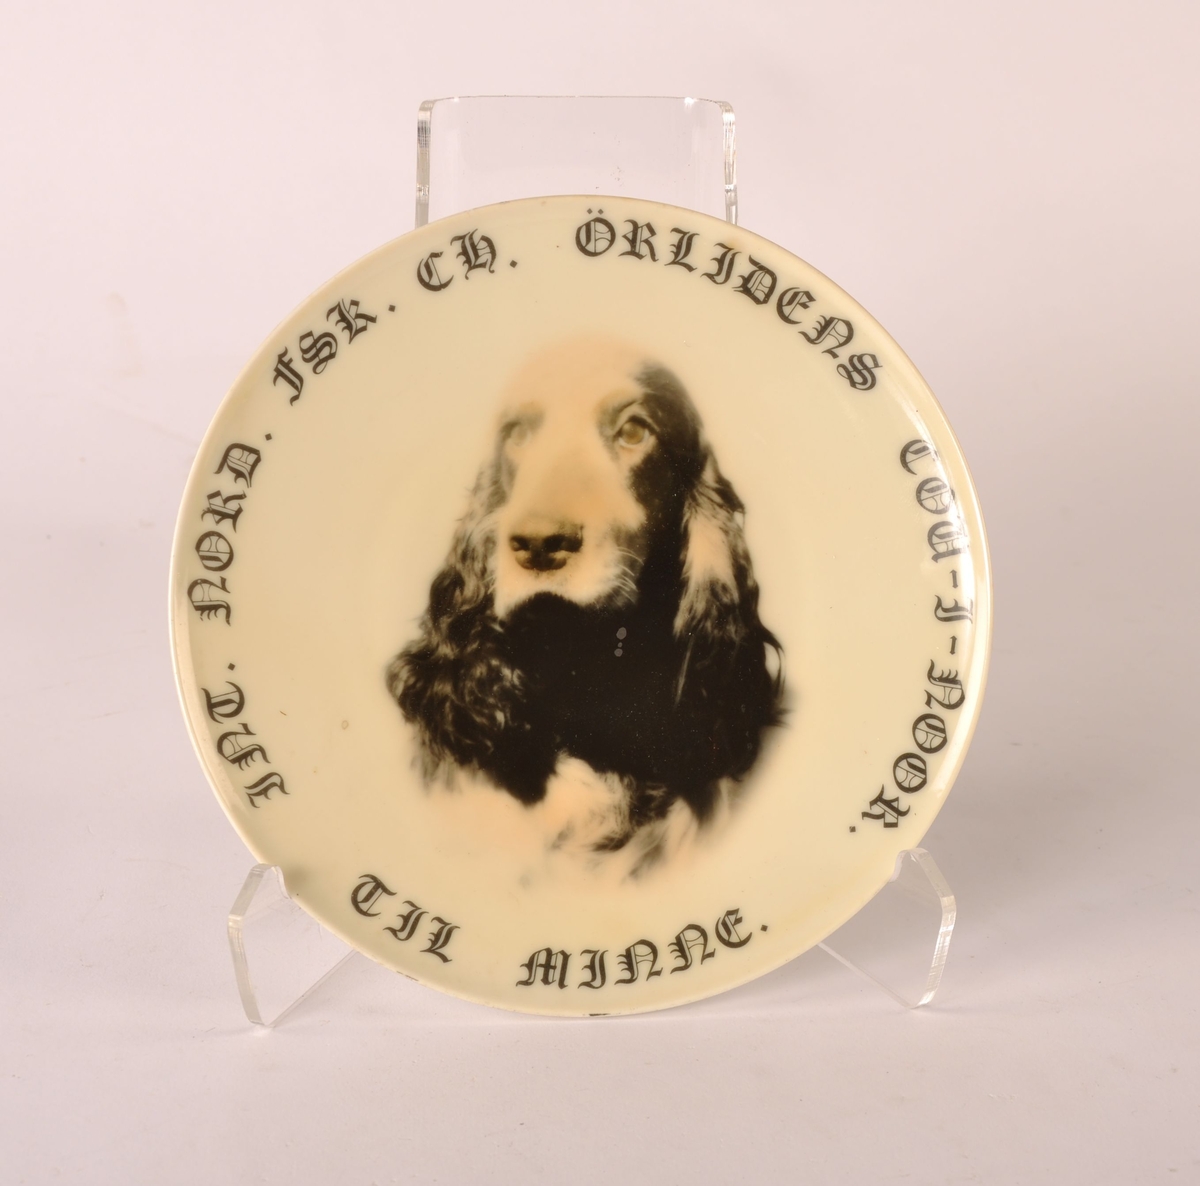 Mulig hundepremie (eller pyntefat) i form av rund, hvit keramikktallerken. Motiv cocker spaniel og tekst.